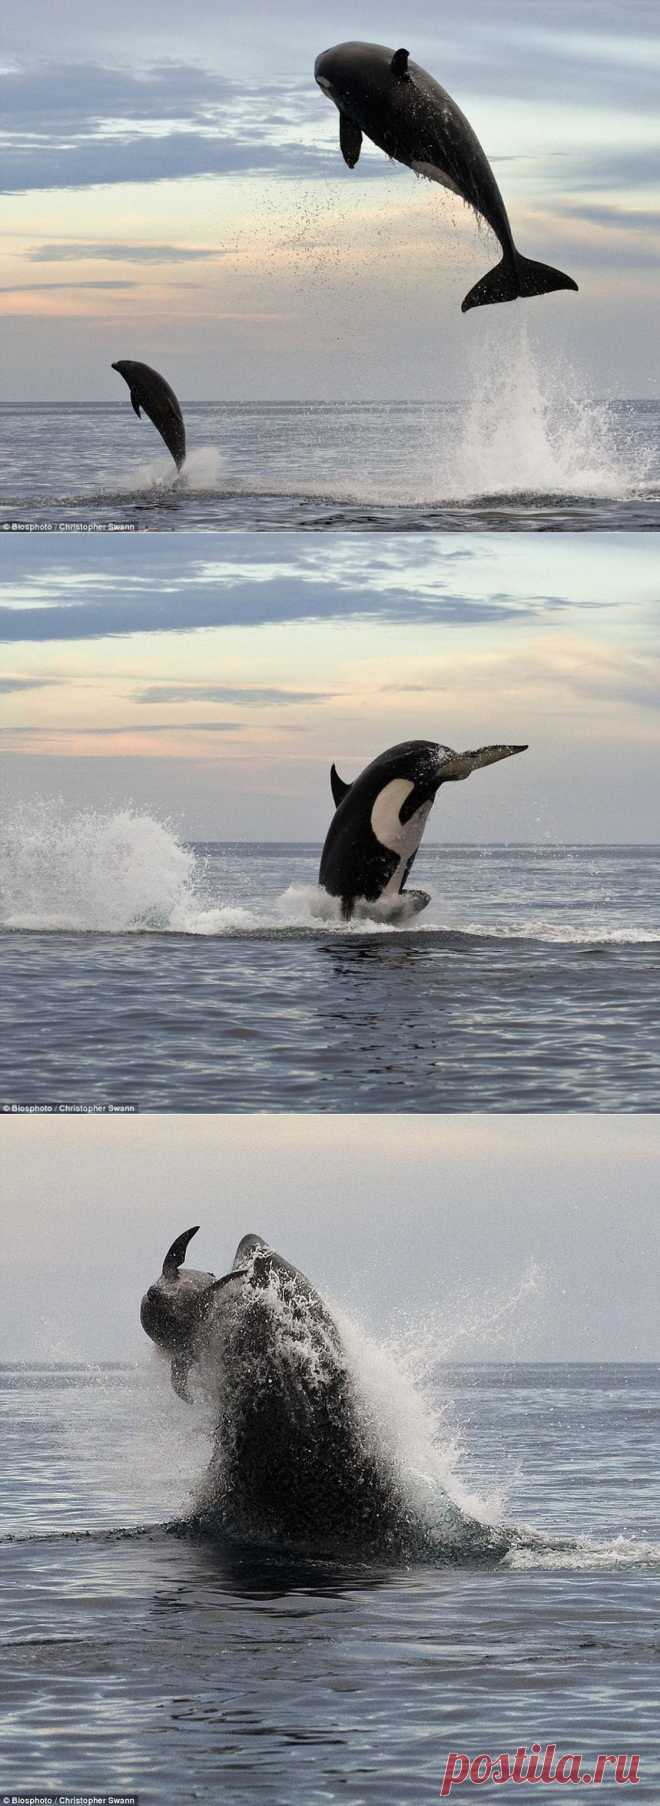 Касатка преследует дельфина. Фоторепортаж